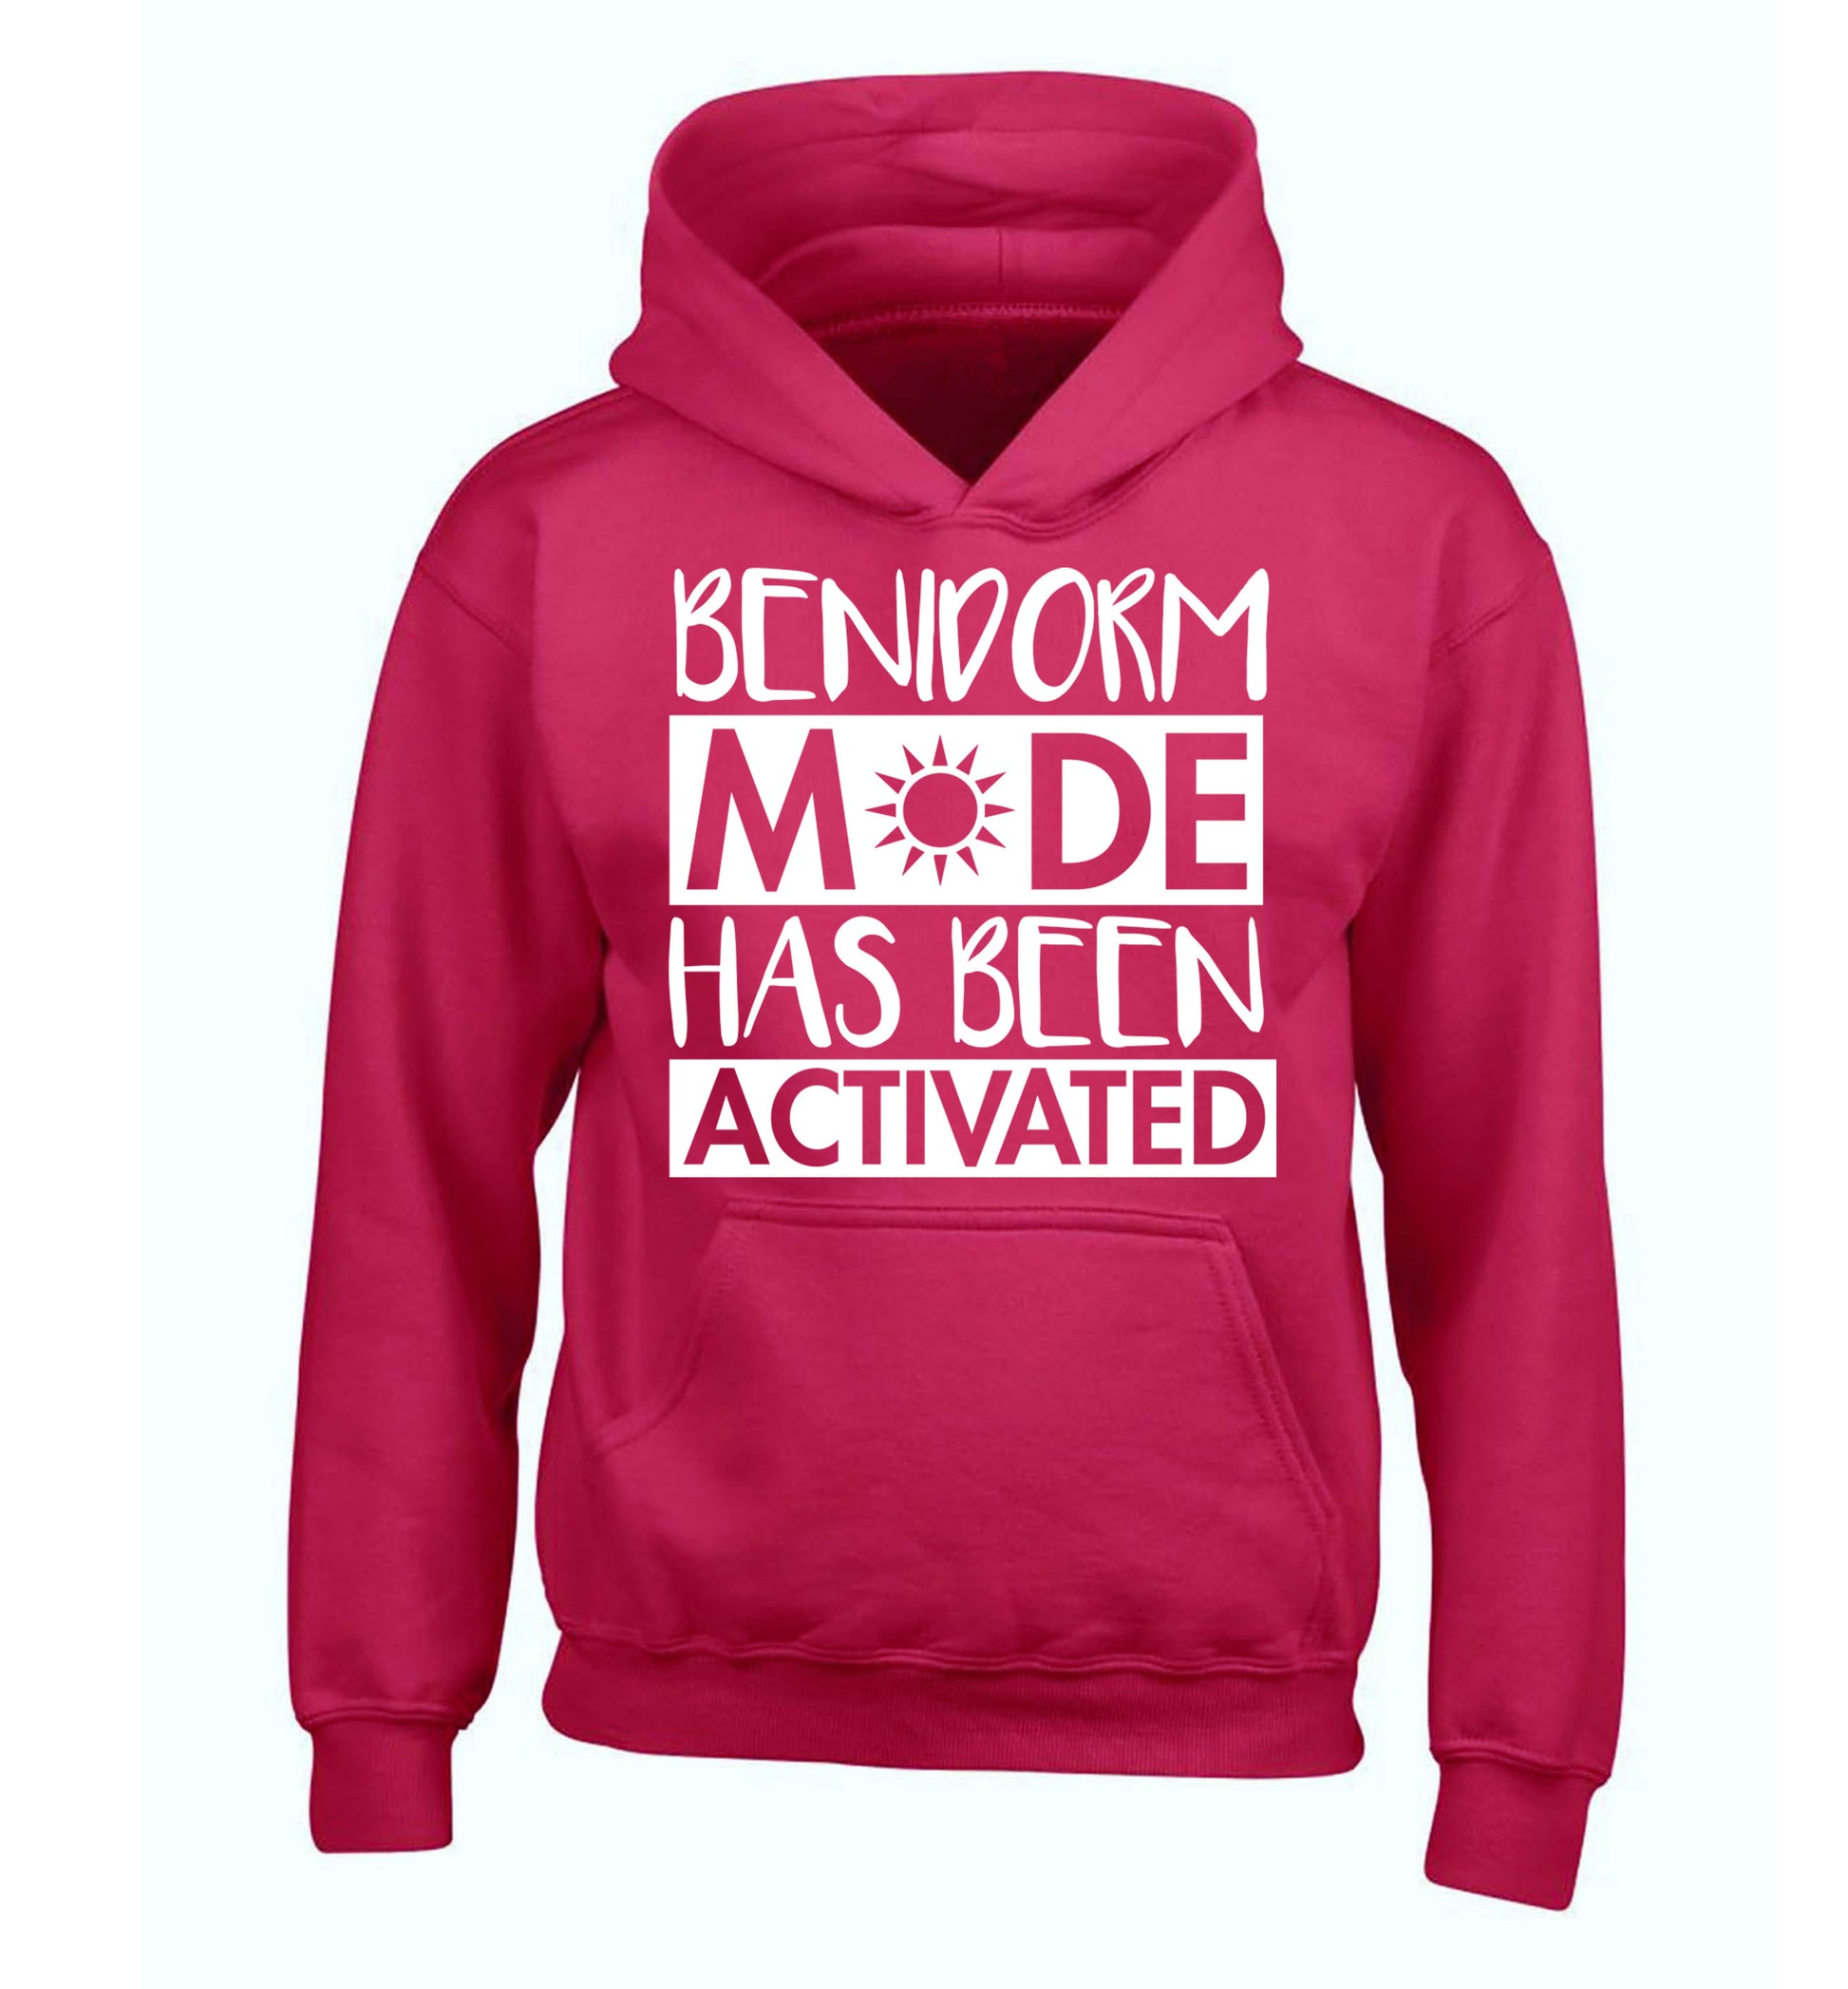 Benidorm mode has been activated children's pink hoodie 12-14 Years